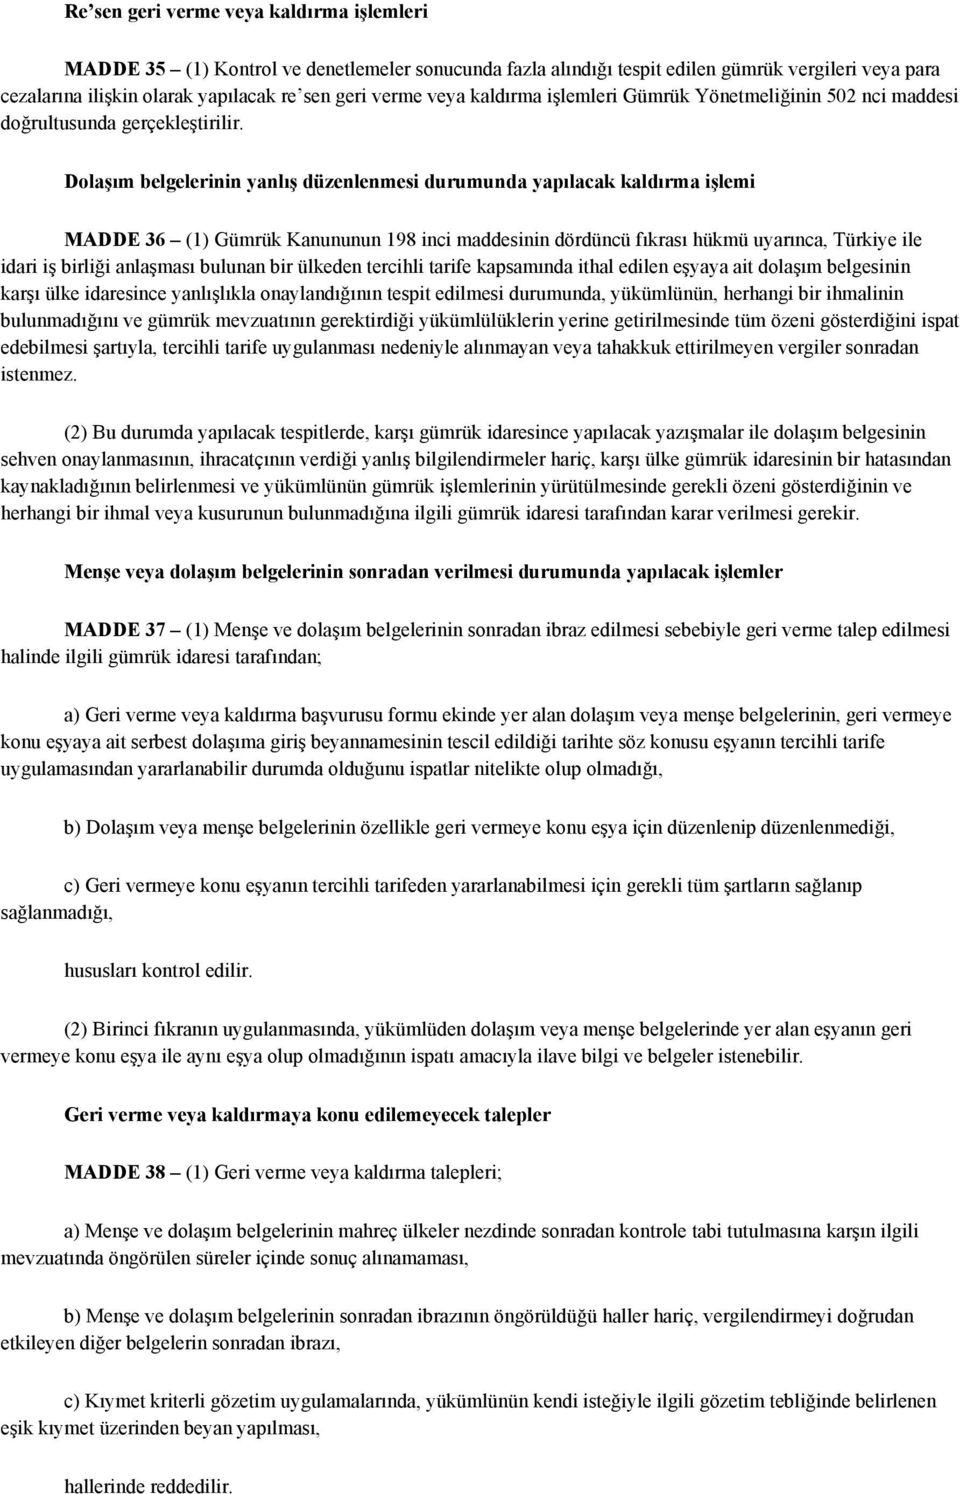 Dolaşım belgelerinin yanlış düzenlenmesi durumunda yapılacak kaldırma işlemi MADDE 36 (1) Gümrük Kanununun 198 inci maddesinin dördüncü fıkrası hükmü uyarınca, Türkiye ile idari iş birliği anlaşması